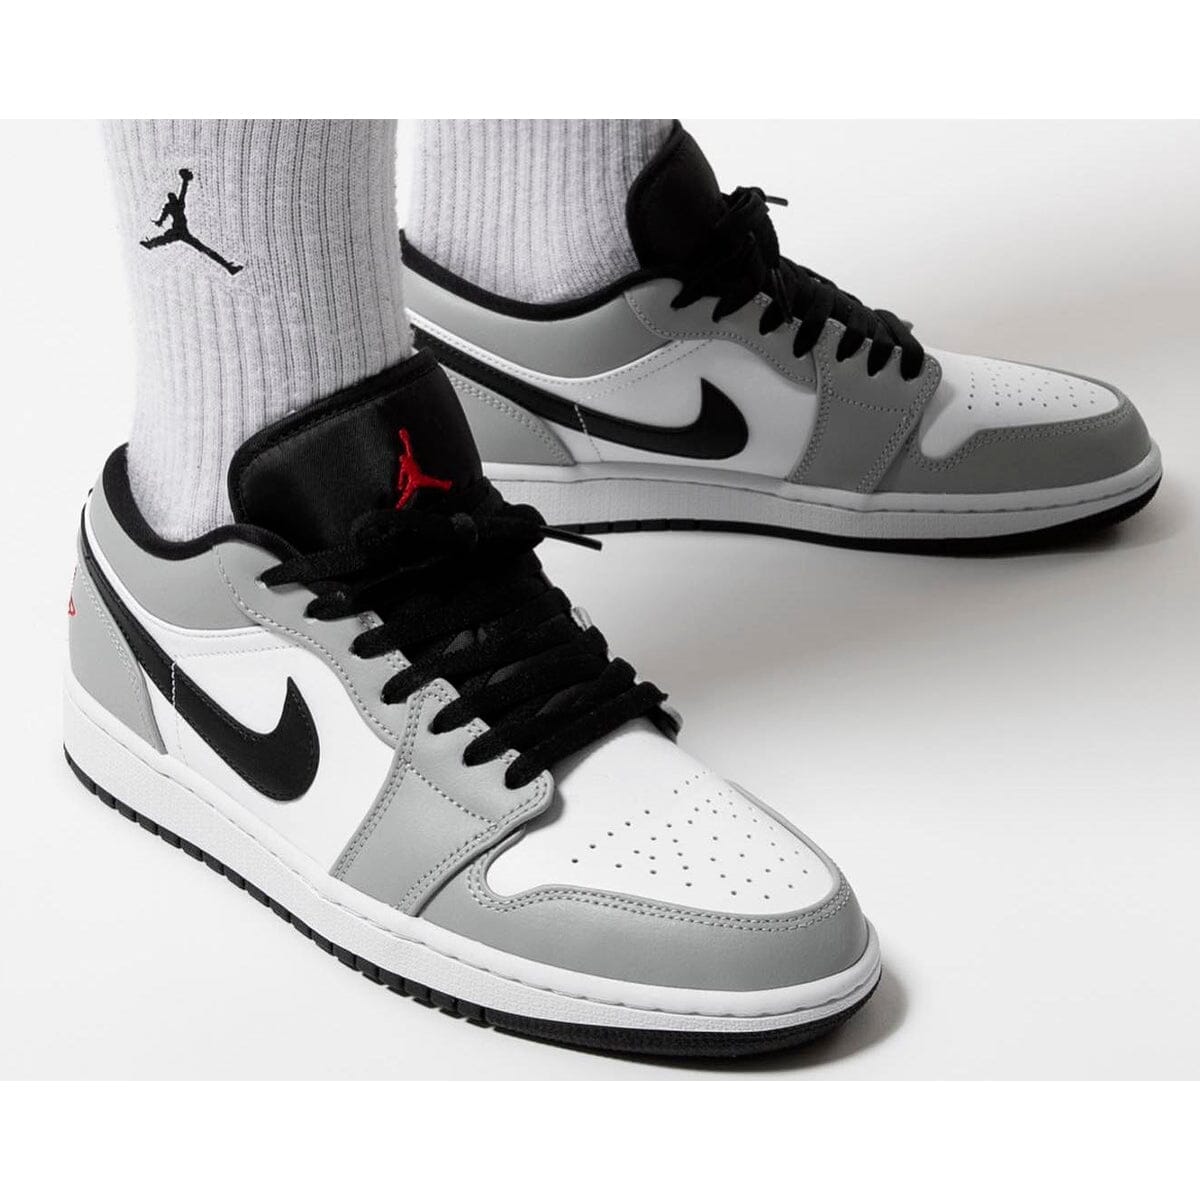 Air Jordan 1 Low Light Smoke Grey Air Jordan 1 Low Blizz Sneakers 